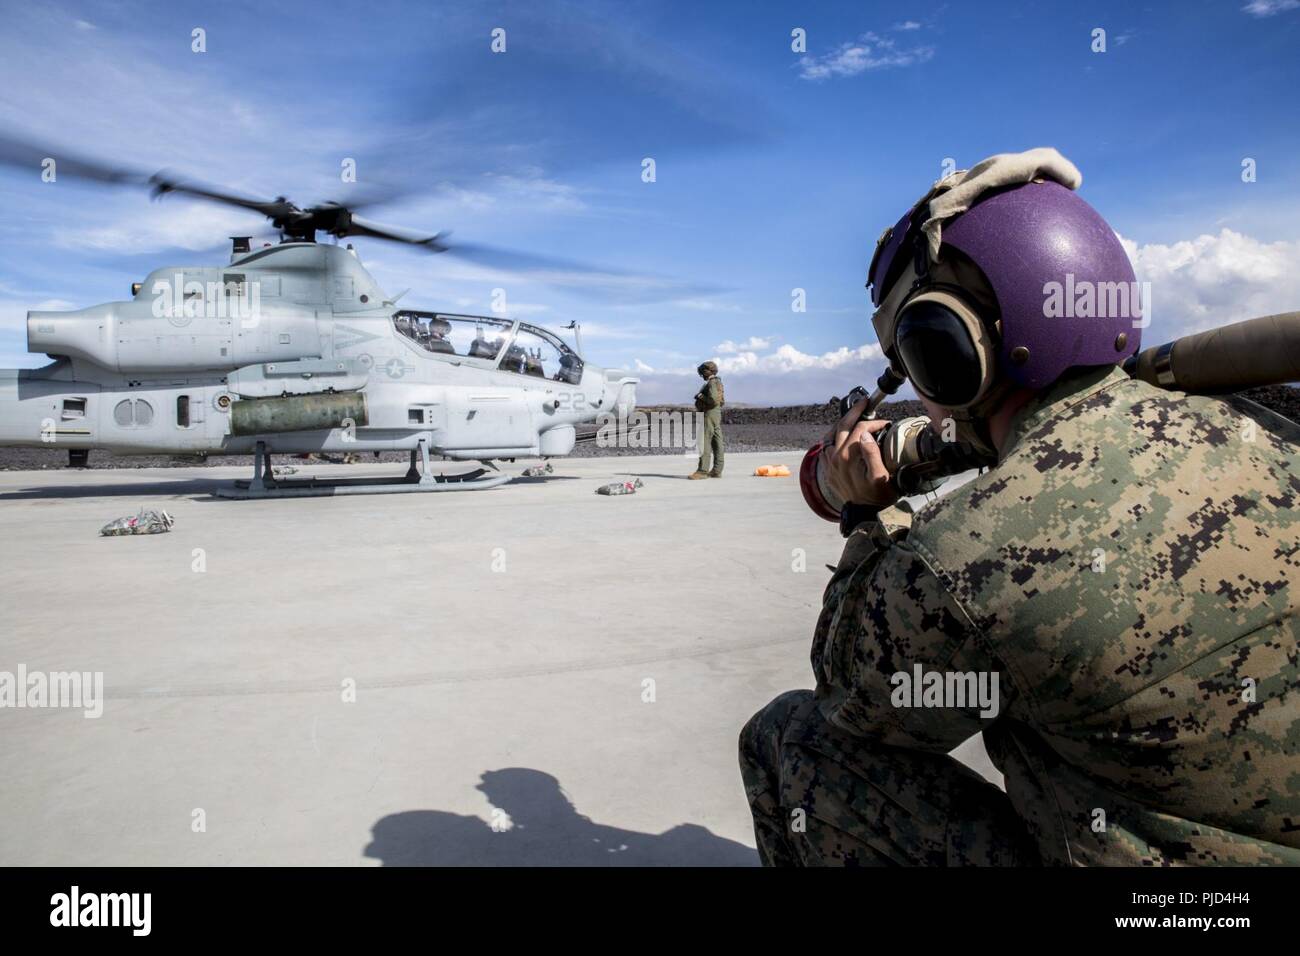 POHAKULOA TRAINING AREA, California (18. Juli 2018) US Marine Corps Cpl. Garrett Subik, ein Großteil der Spezialist mit Marine Wing Support Abteilung 24, bereitet eine AH-1W Super Cobra Hubschrauber während ein Probelauf für ein Expeditionary Mobile Kraftstoff Additization Fähigkeit system zu Kraftstoff als Teil der Felge des Pazifiks (Rimpac) Übung an Pohakuloa Training Area, California, 18. Juli 2018. RIMPAC bietet hochwertige Ausbildung für Task-organisiert, leistungsfähigen Marine Air-Ground Task Force und erhöht die kritische Reaktion auf Krisen Fähigkeit der US-Marines im Pazifik. 25 Nationen, 46 Schiffe, 5 Stockfoto